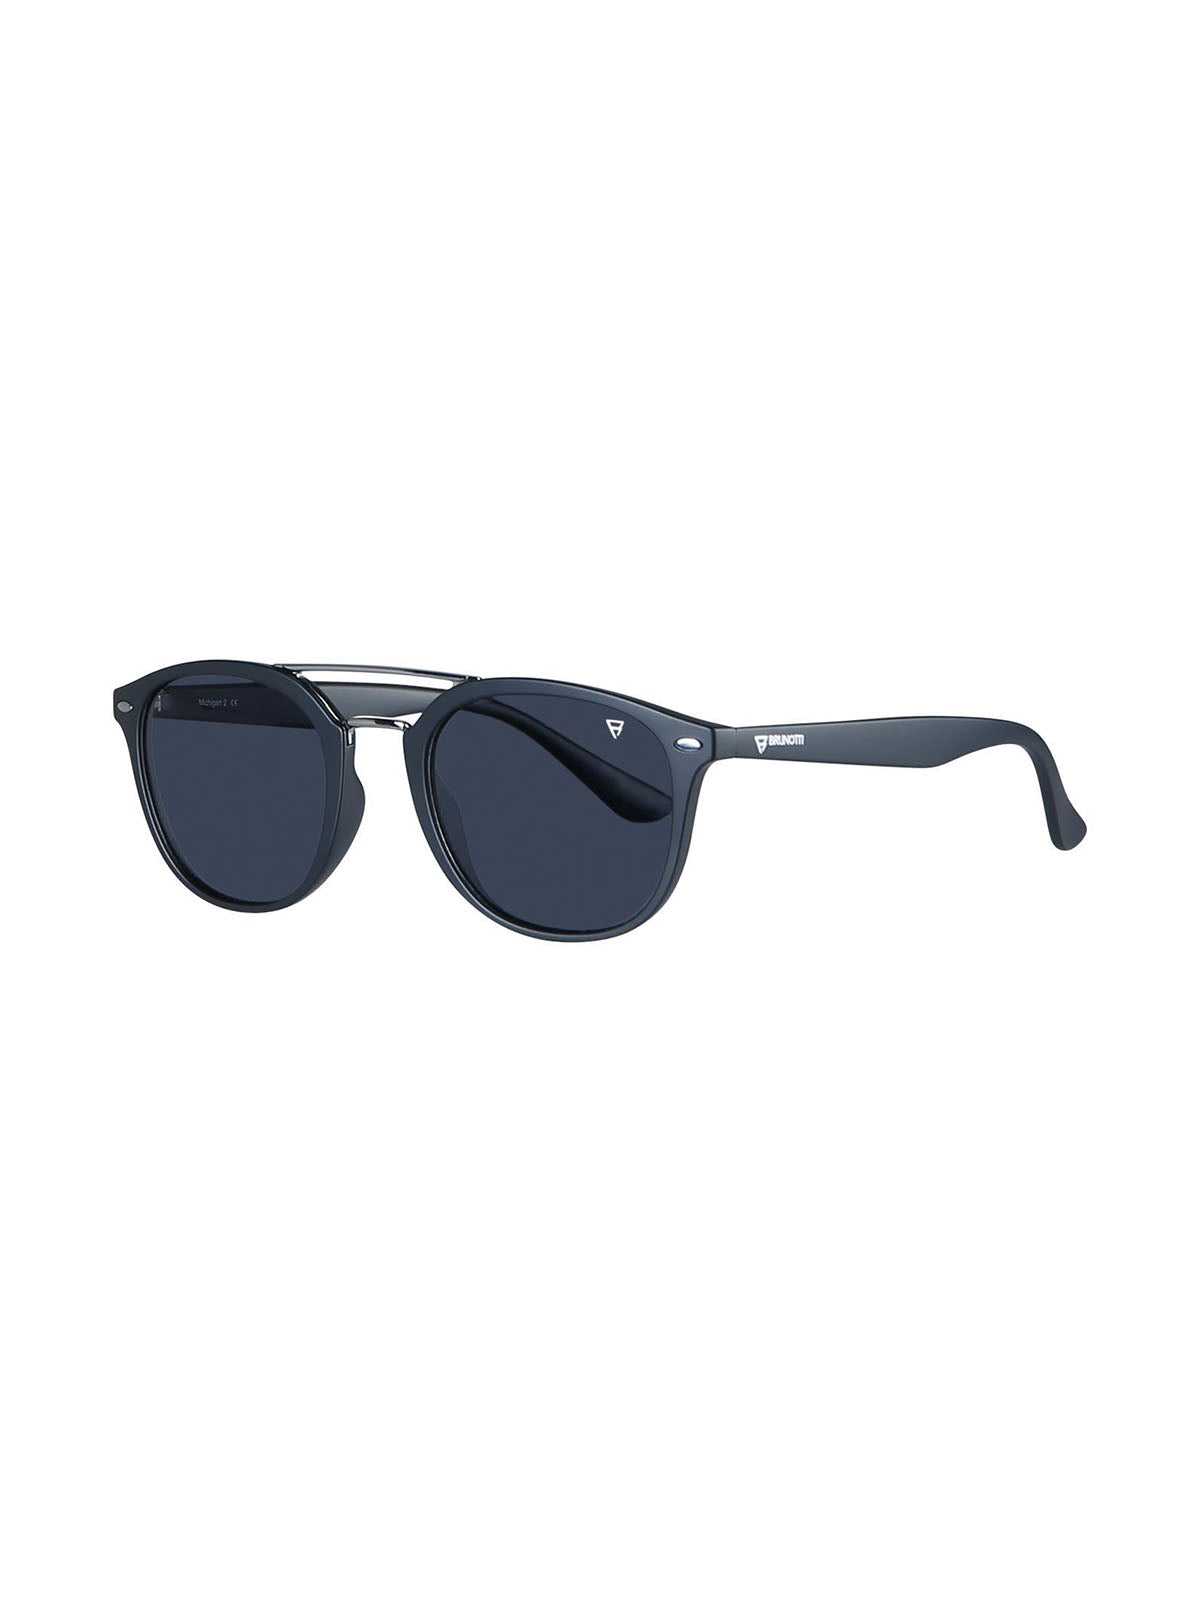 Michigan 2 Unisex Sunglasses | Black